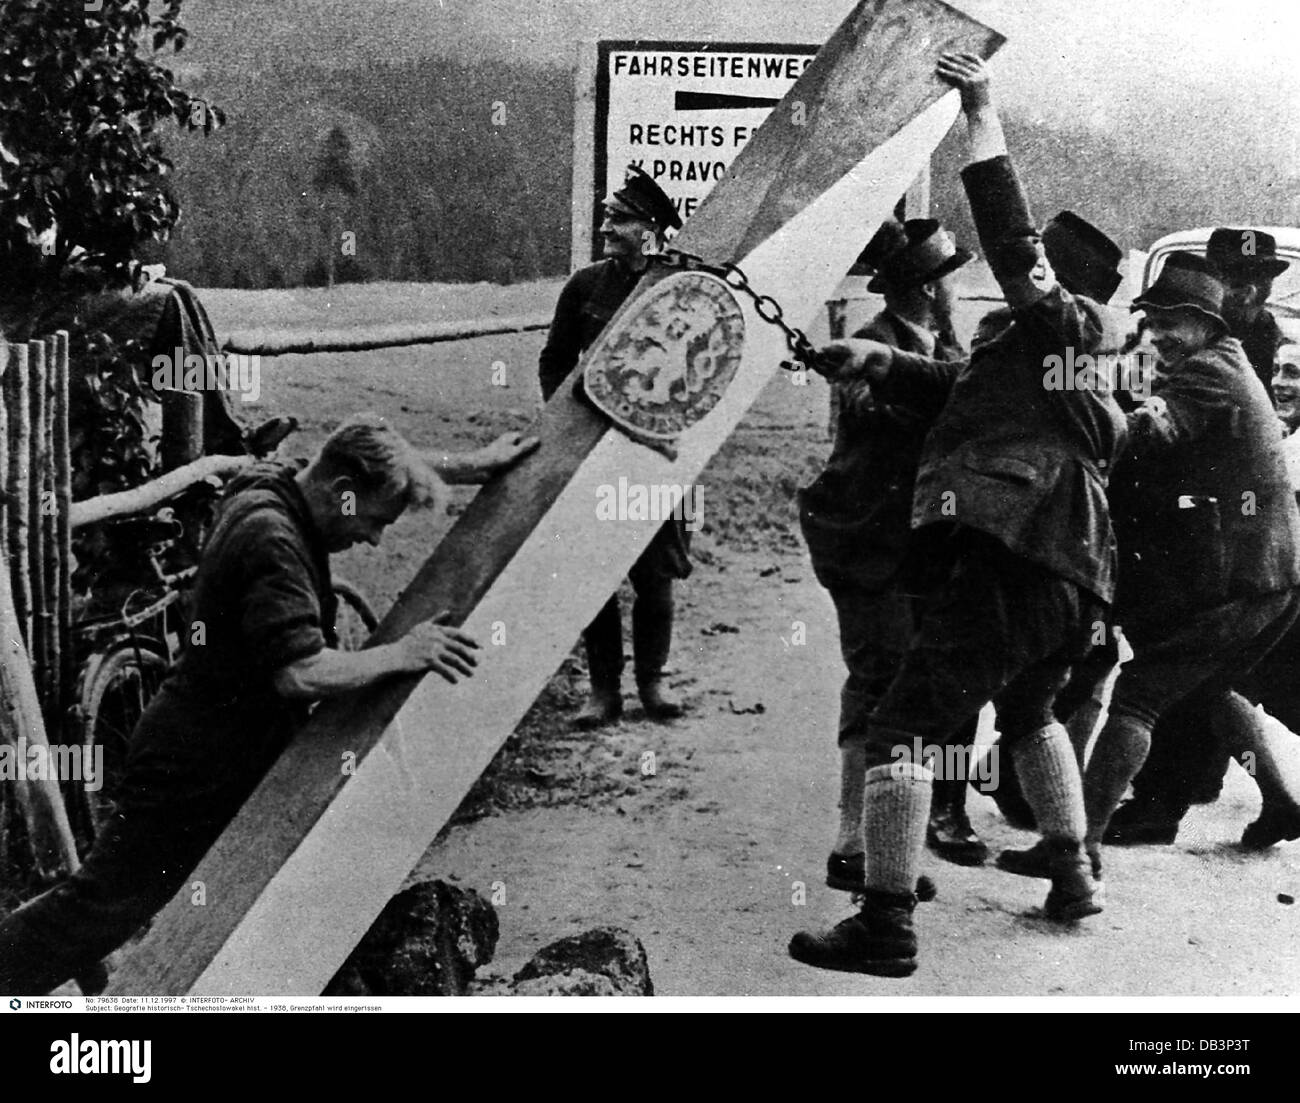 Nazisme / National socialisme, occupation des Sudètes 1.10.1938 - 10.10.1938, droits additionnels-Clearences-non disponible Banque D'Images